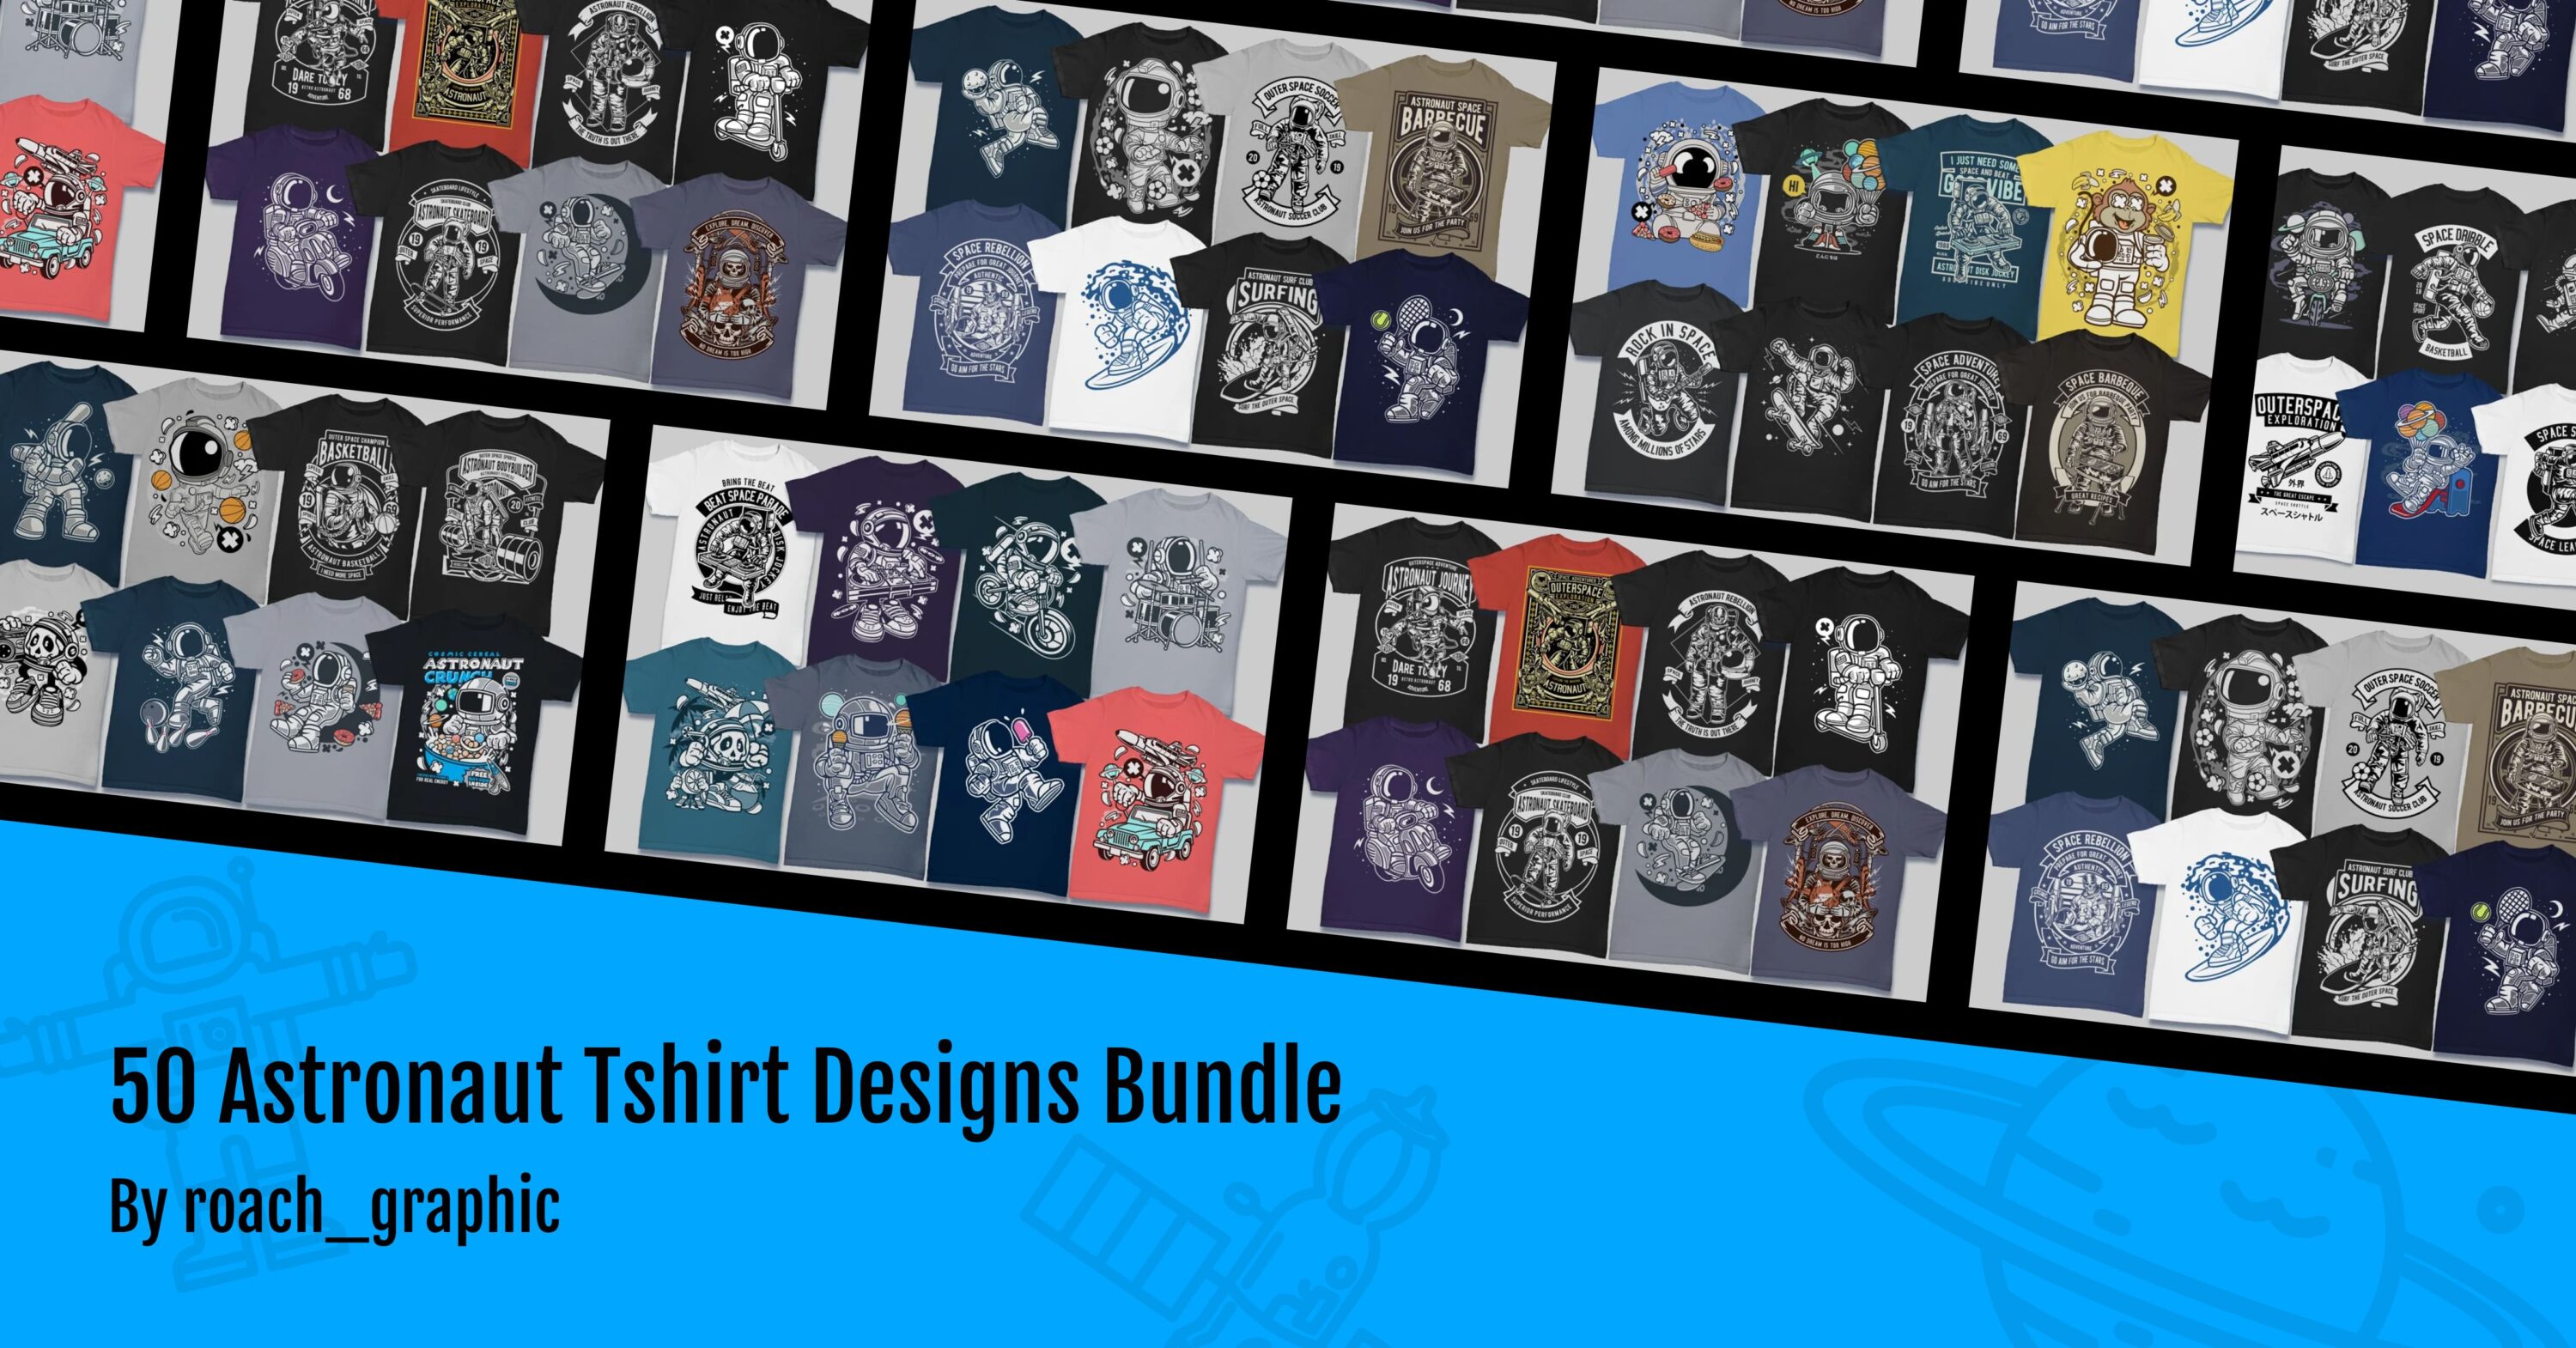 50 Astronaut Tshirt Designs Bundle facebook image.